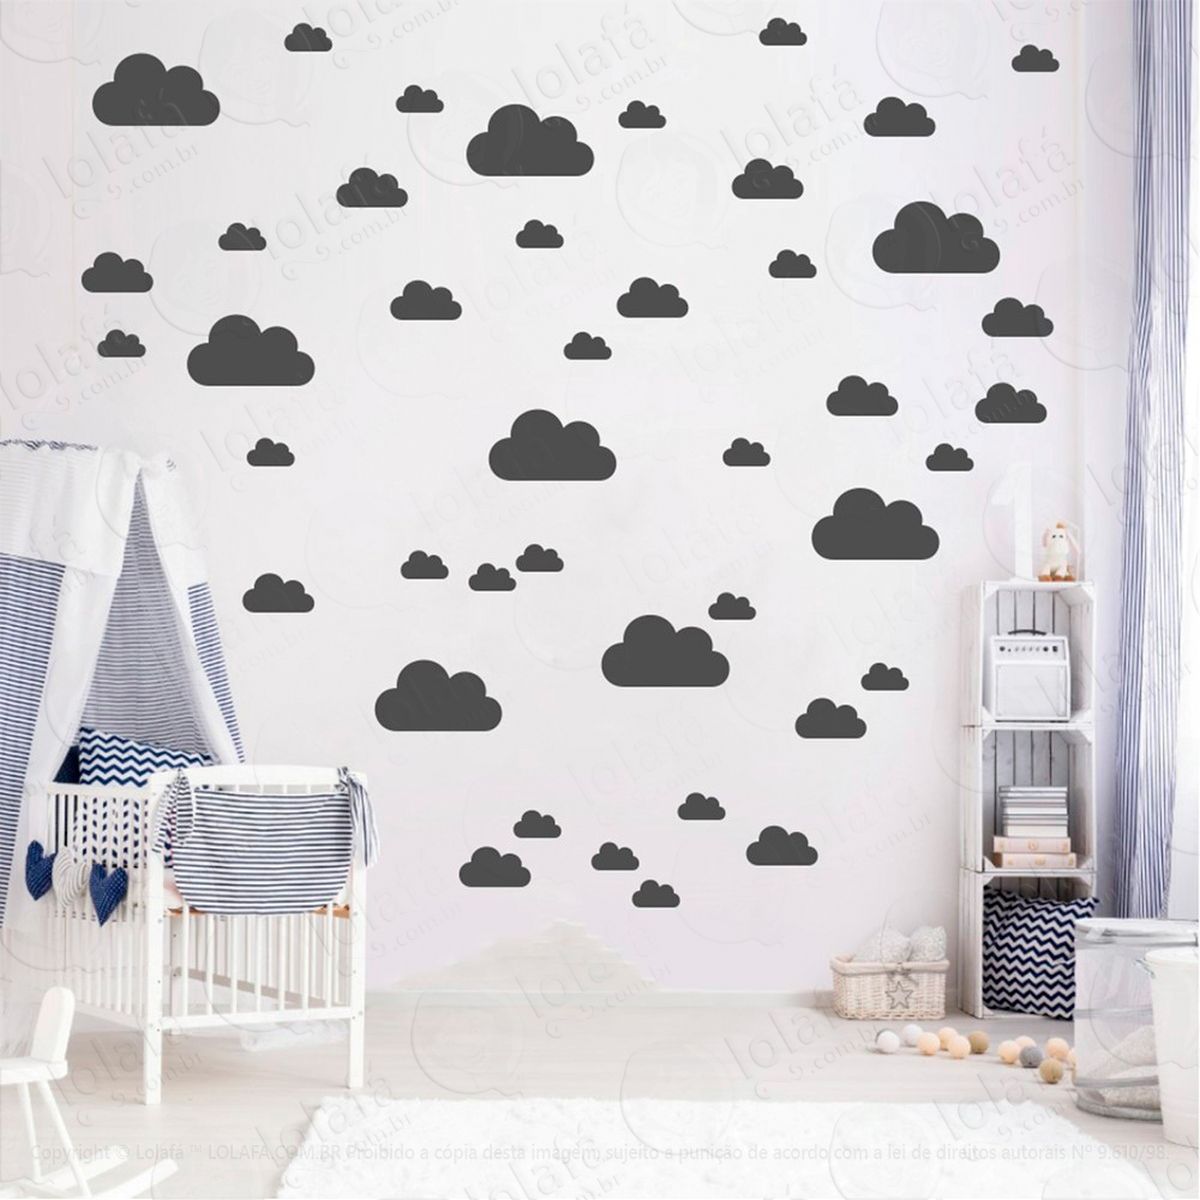 adesivos nuvens 78 peças adesivos para quarto de bebê infantil - mod:753